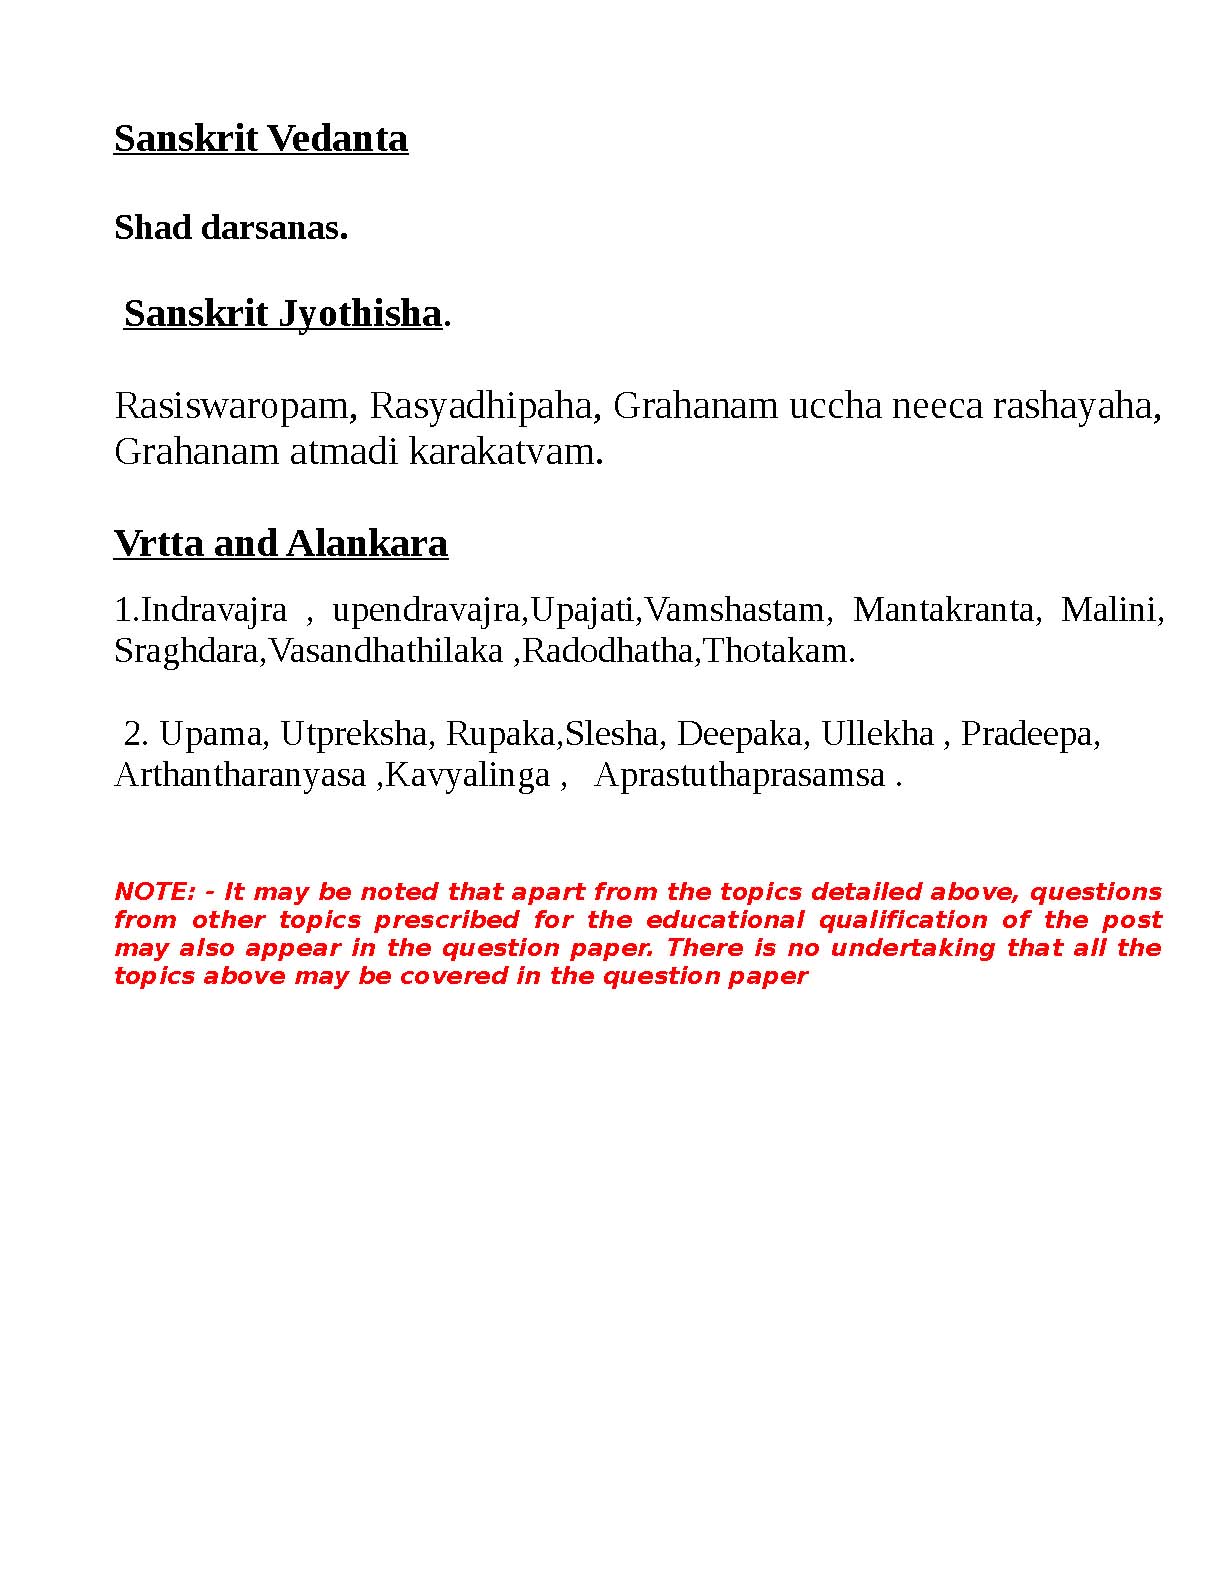 Kerala PSC Full Time Junior Language Teacher Sanskrit Exam Syllabus - Notification Image 2